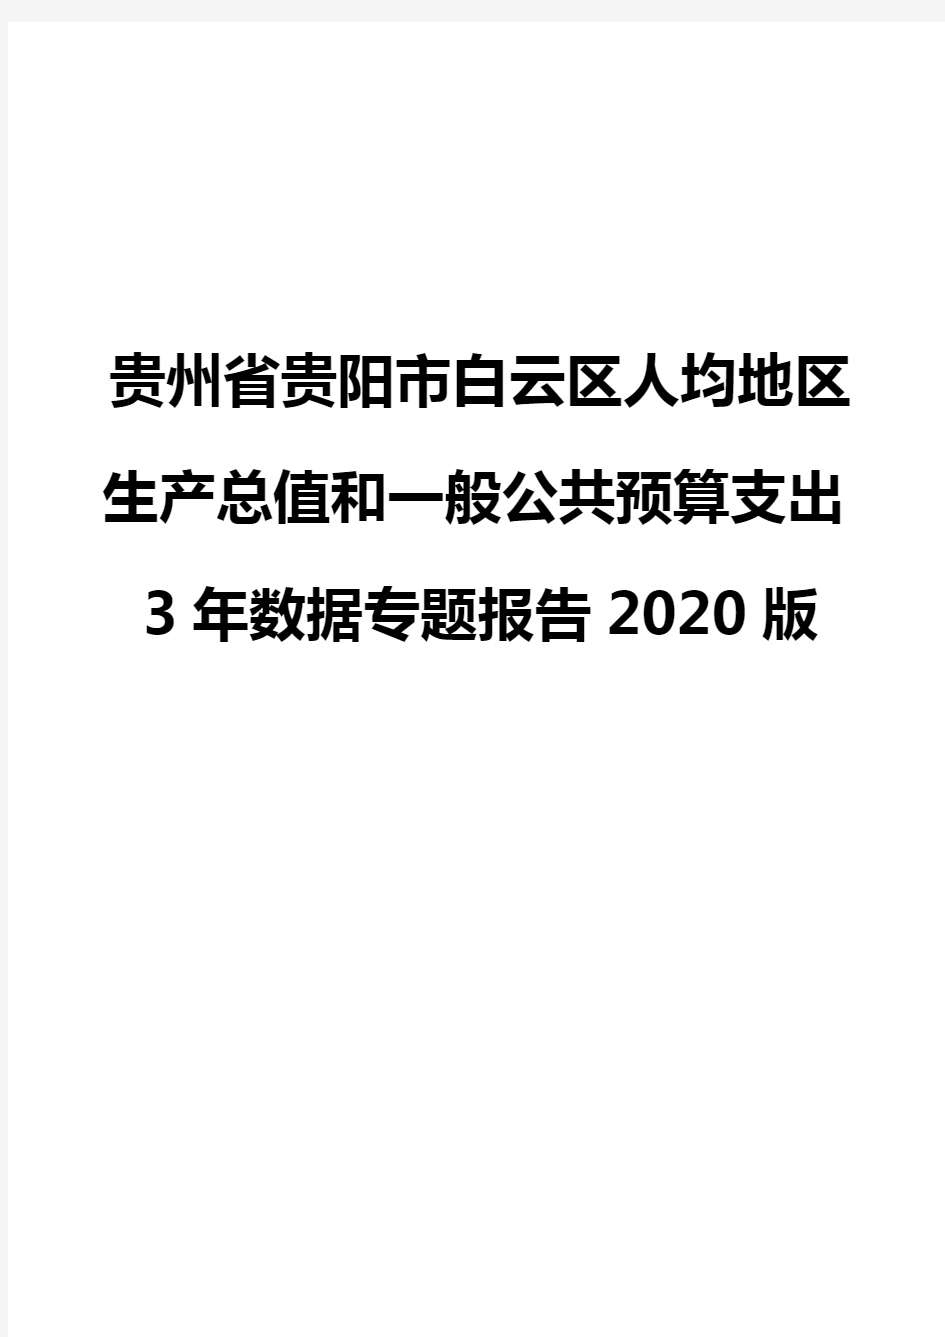 贵州省贵阳市白云区人均地区生产总值和一般公共预算支出3年数据专题报告2020版